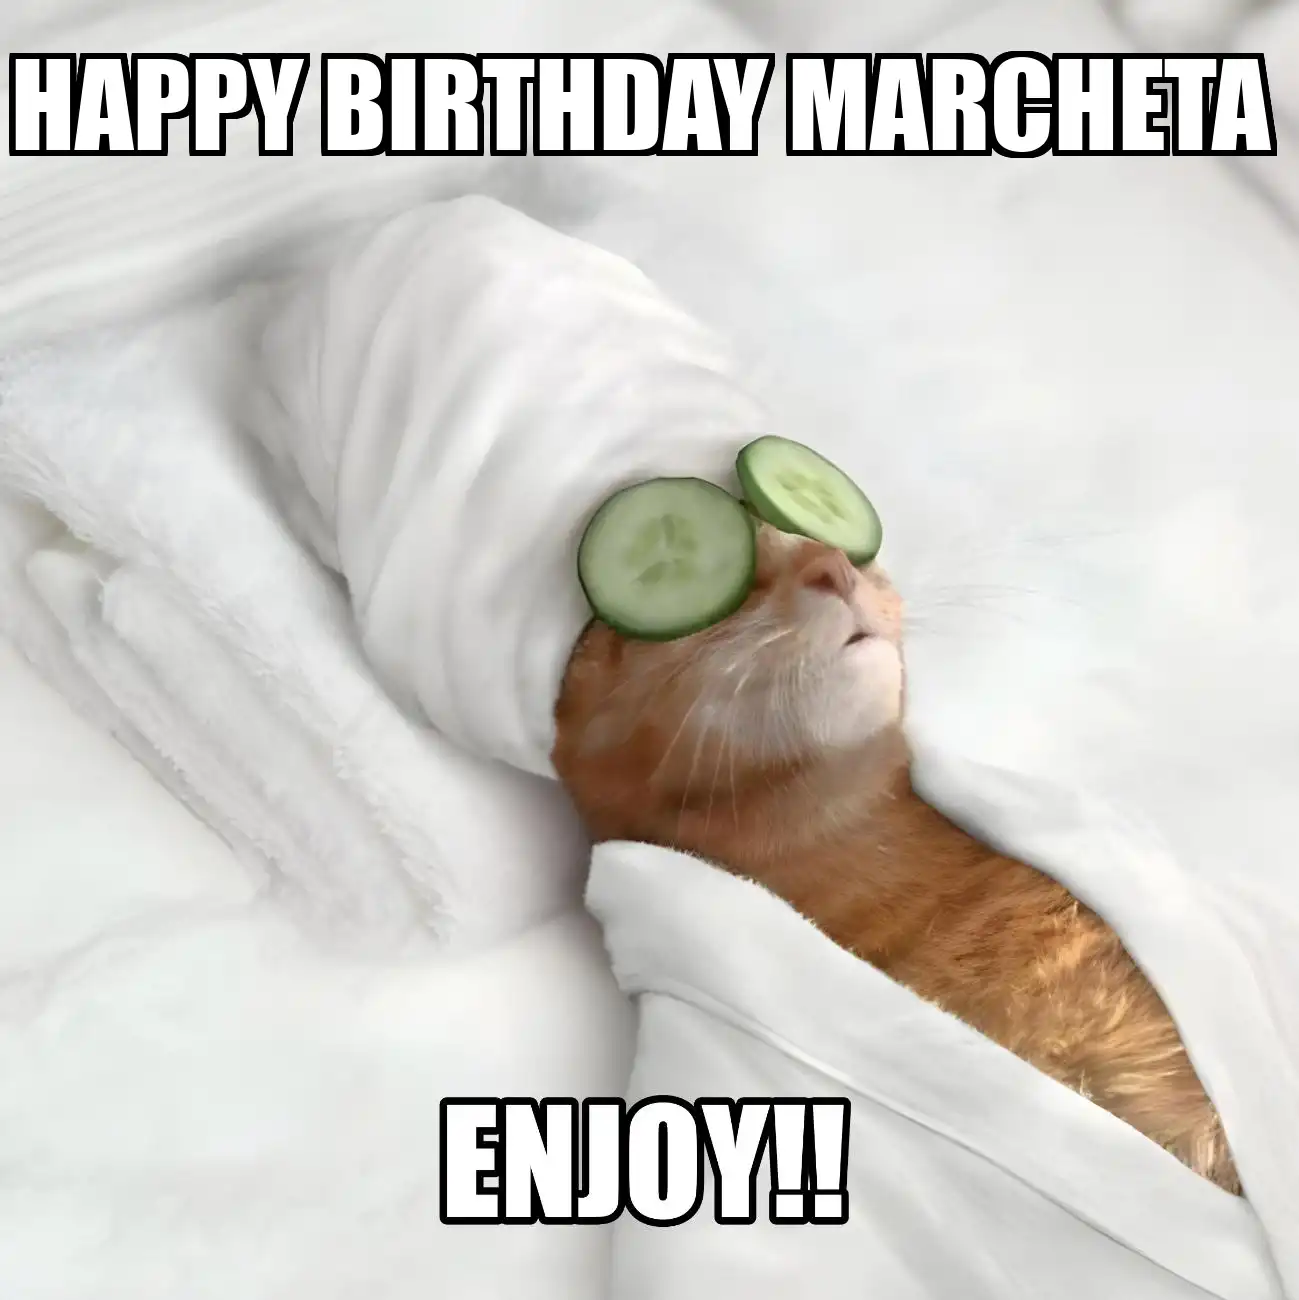 Happy Birthday Marcheta Enjoy Cat Meme